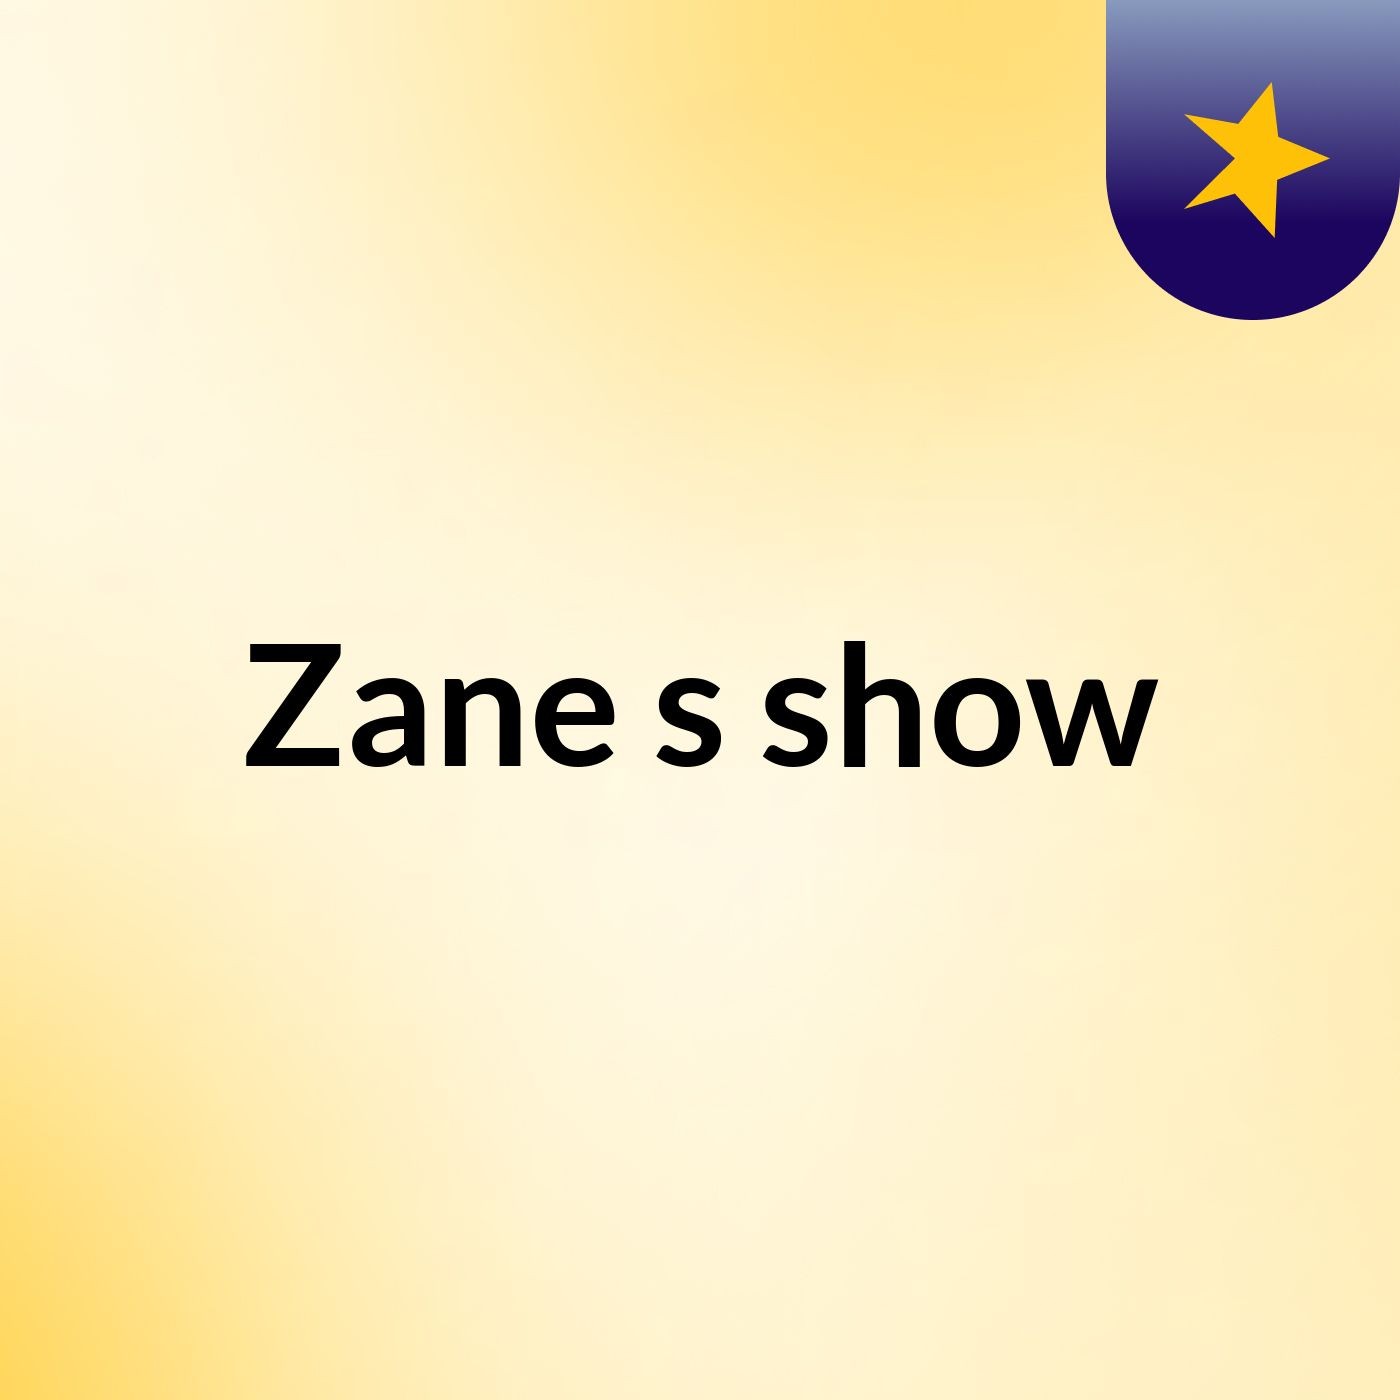 Zane's show